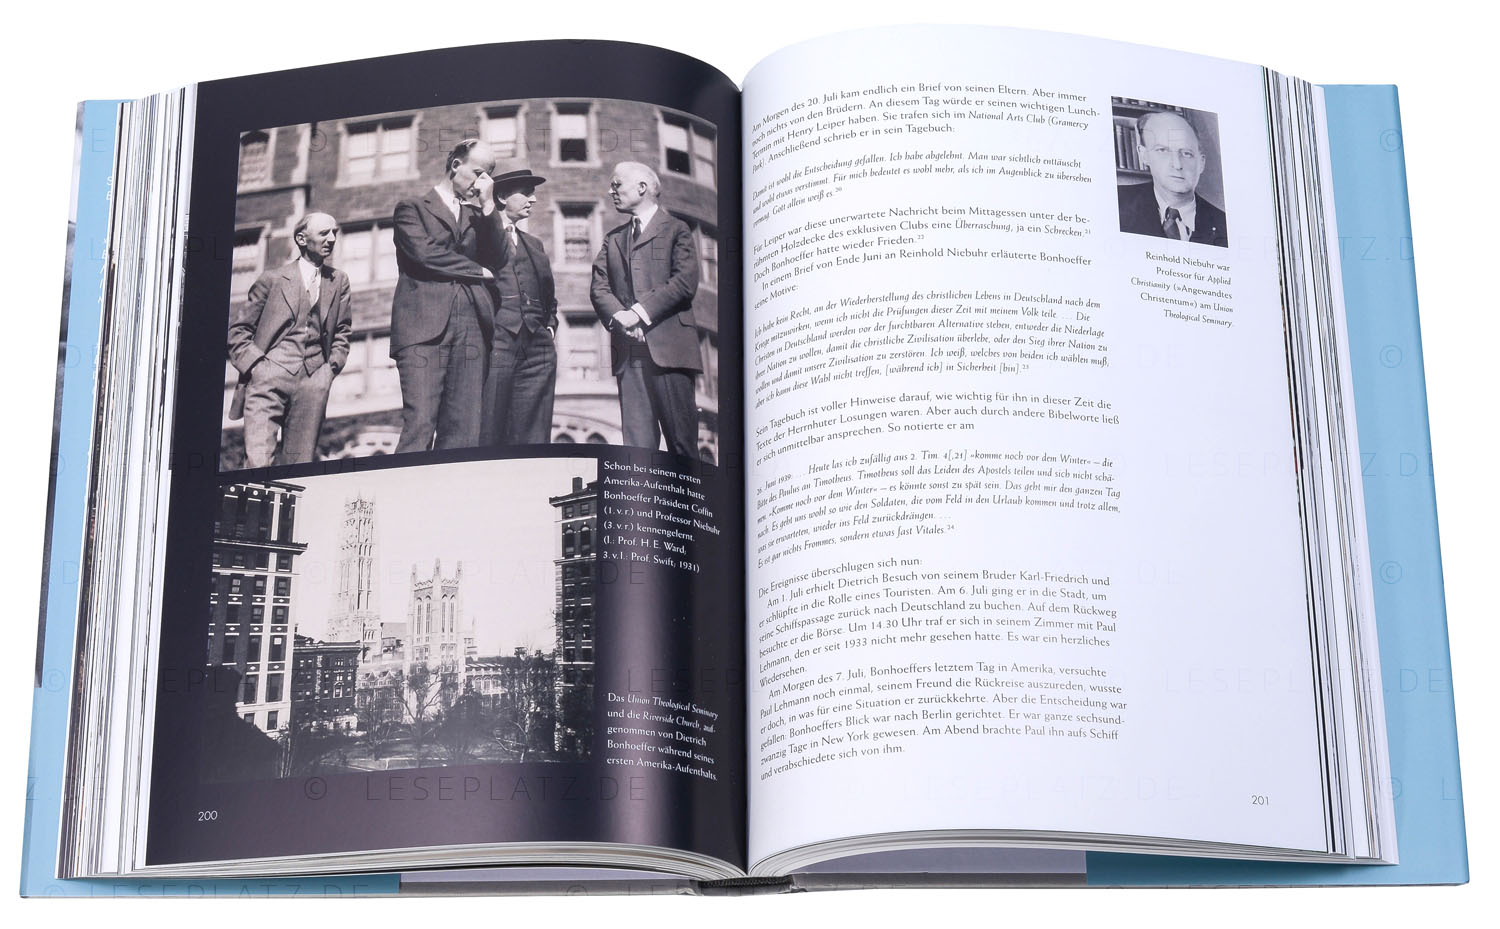 Bonhoeffer - Eine Biografie in Bildern